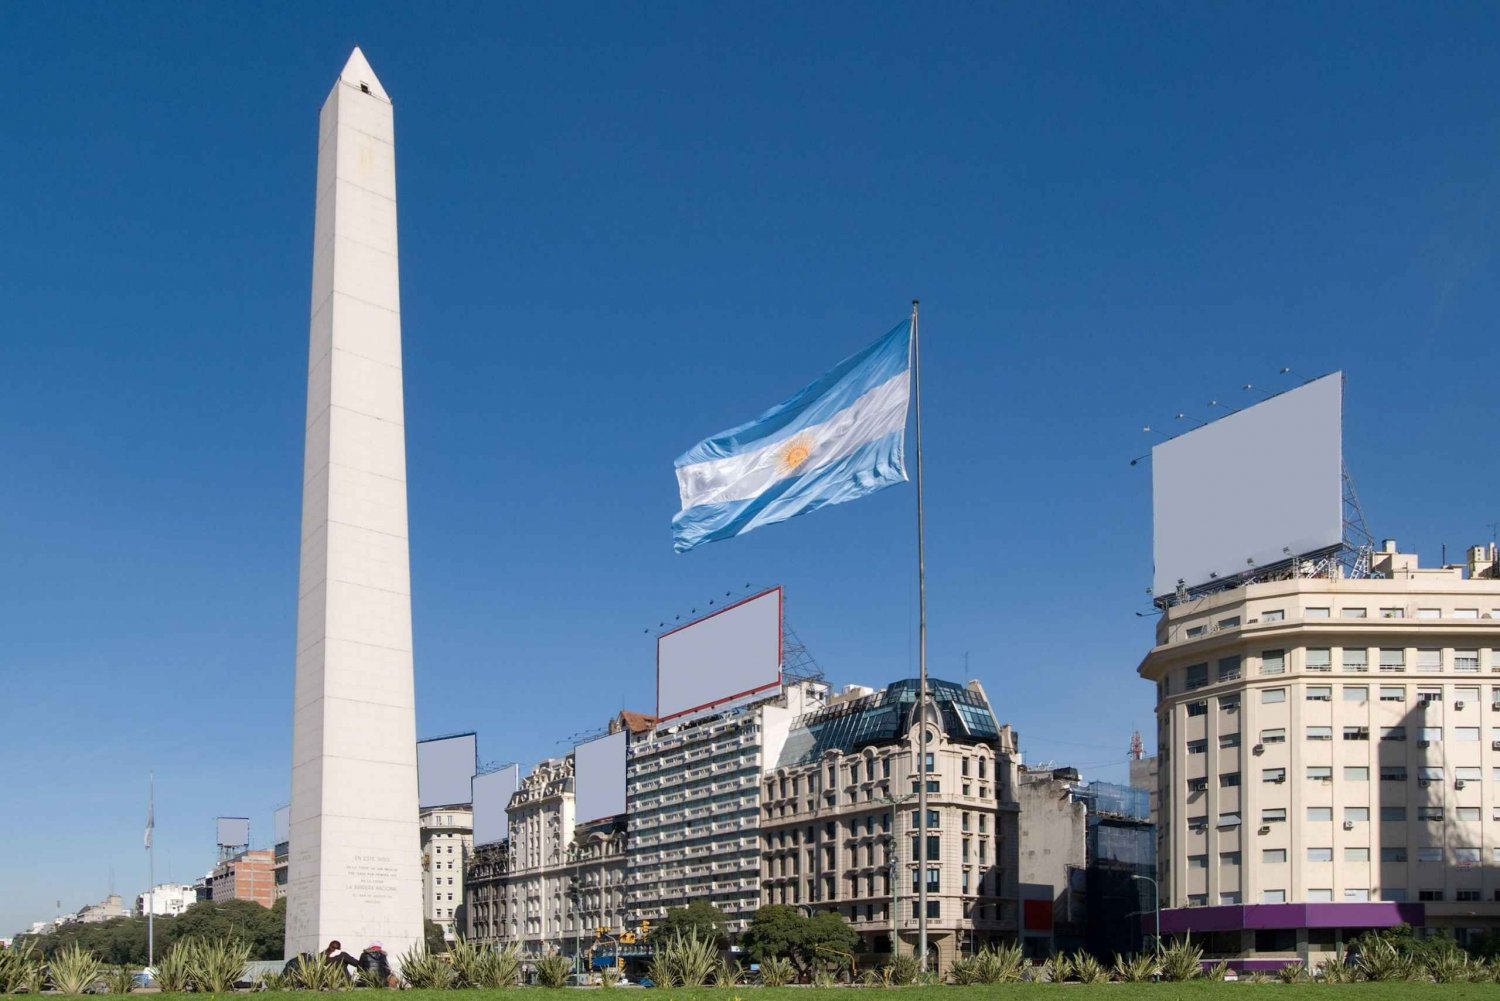 9-päiväinen tutkimusmatka Buenos Airesiin, Iguasuun ja El Calafateen